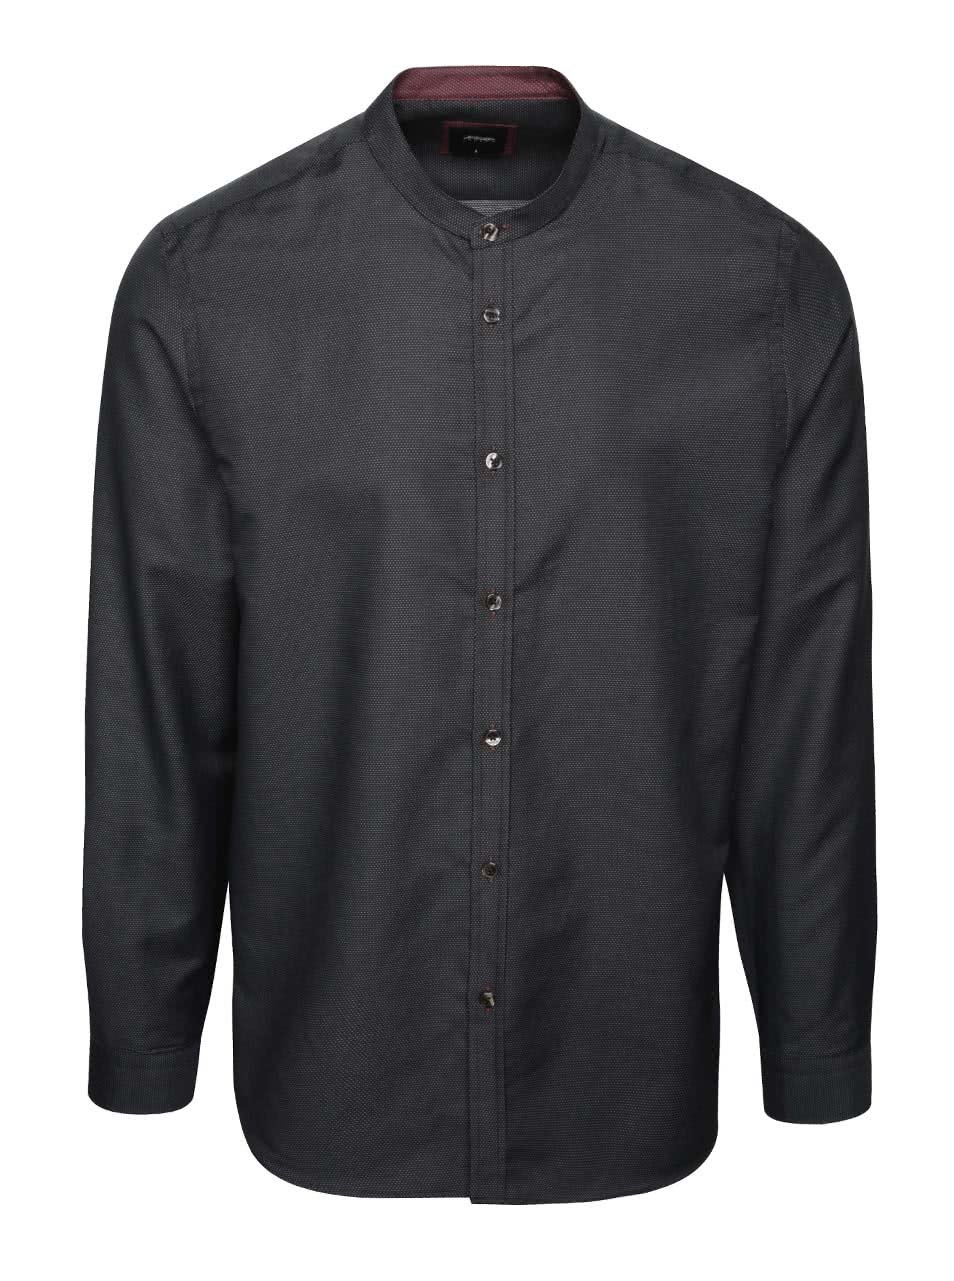 Černá puntíkovaná košile bez límečku Burton Menswear London